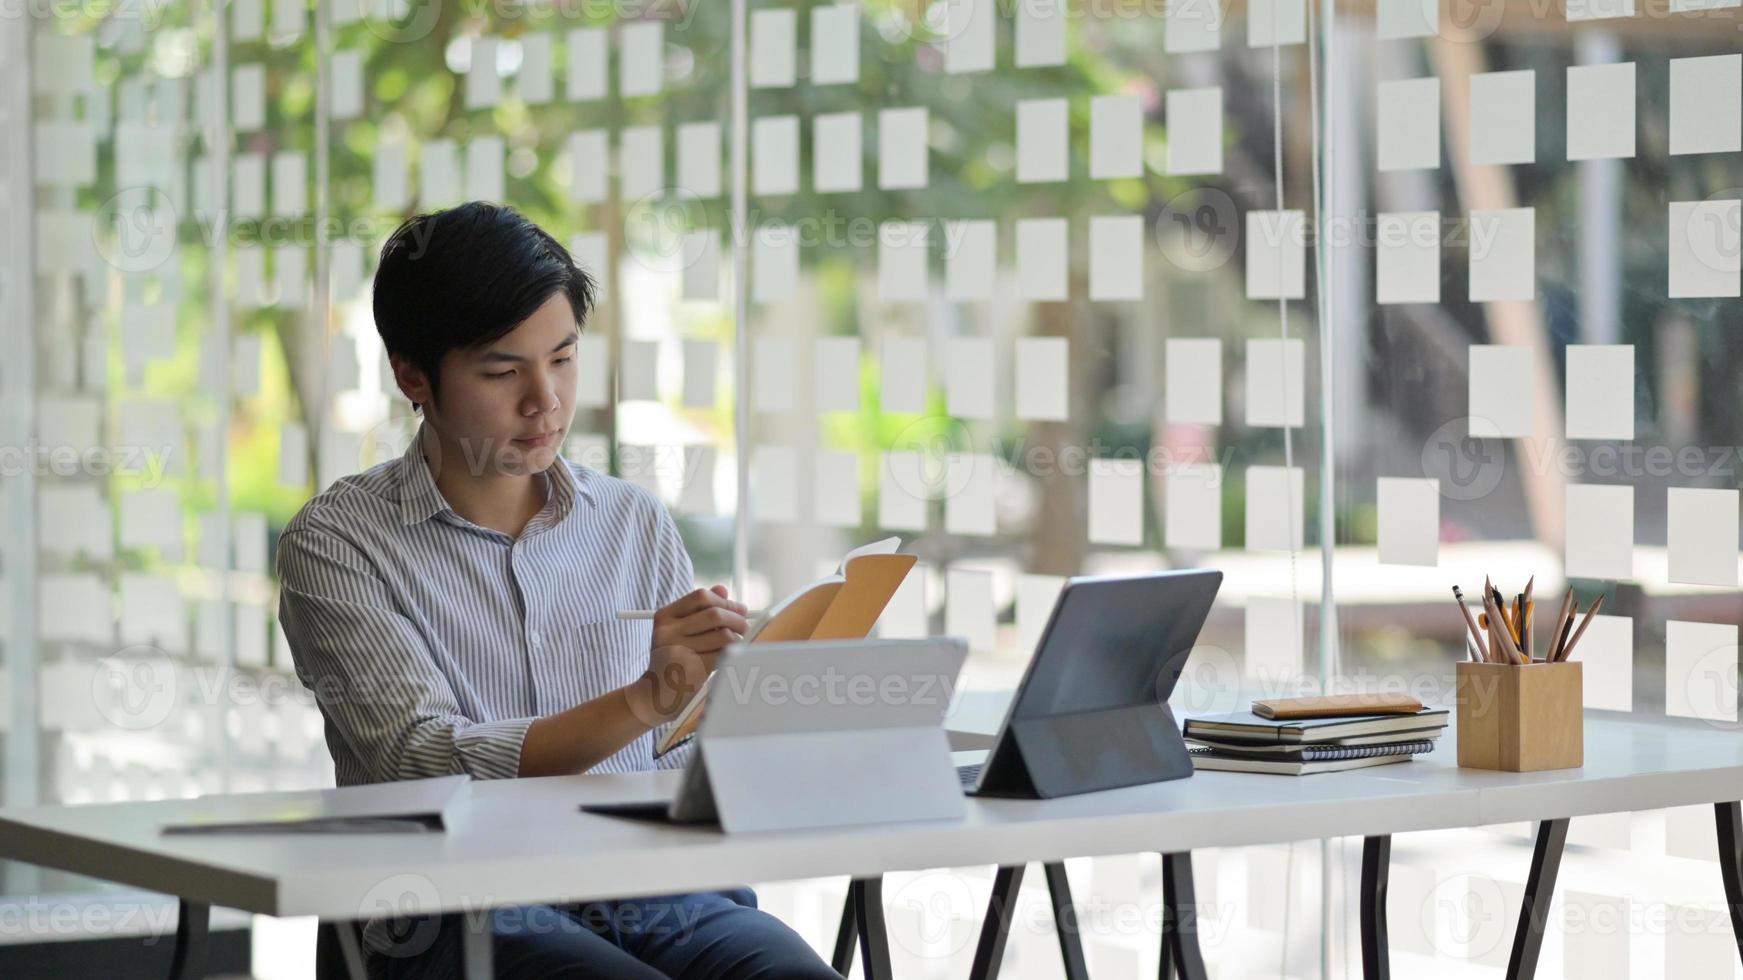 foto recortada de um estudante asiático com um laptop e estacionário se preparando para concluir sua tese para terminar a universidade.